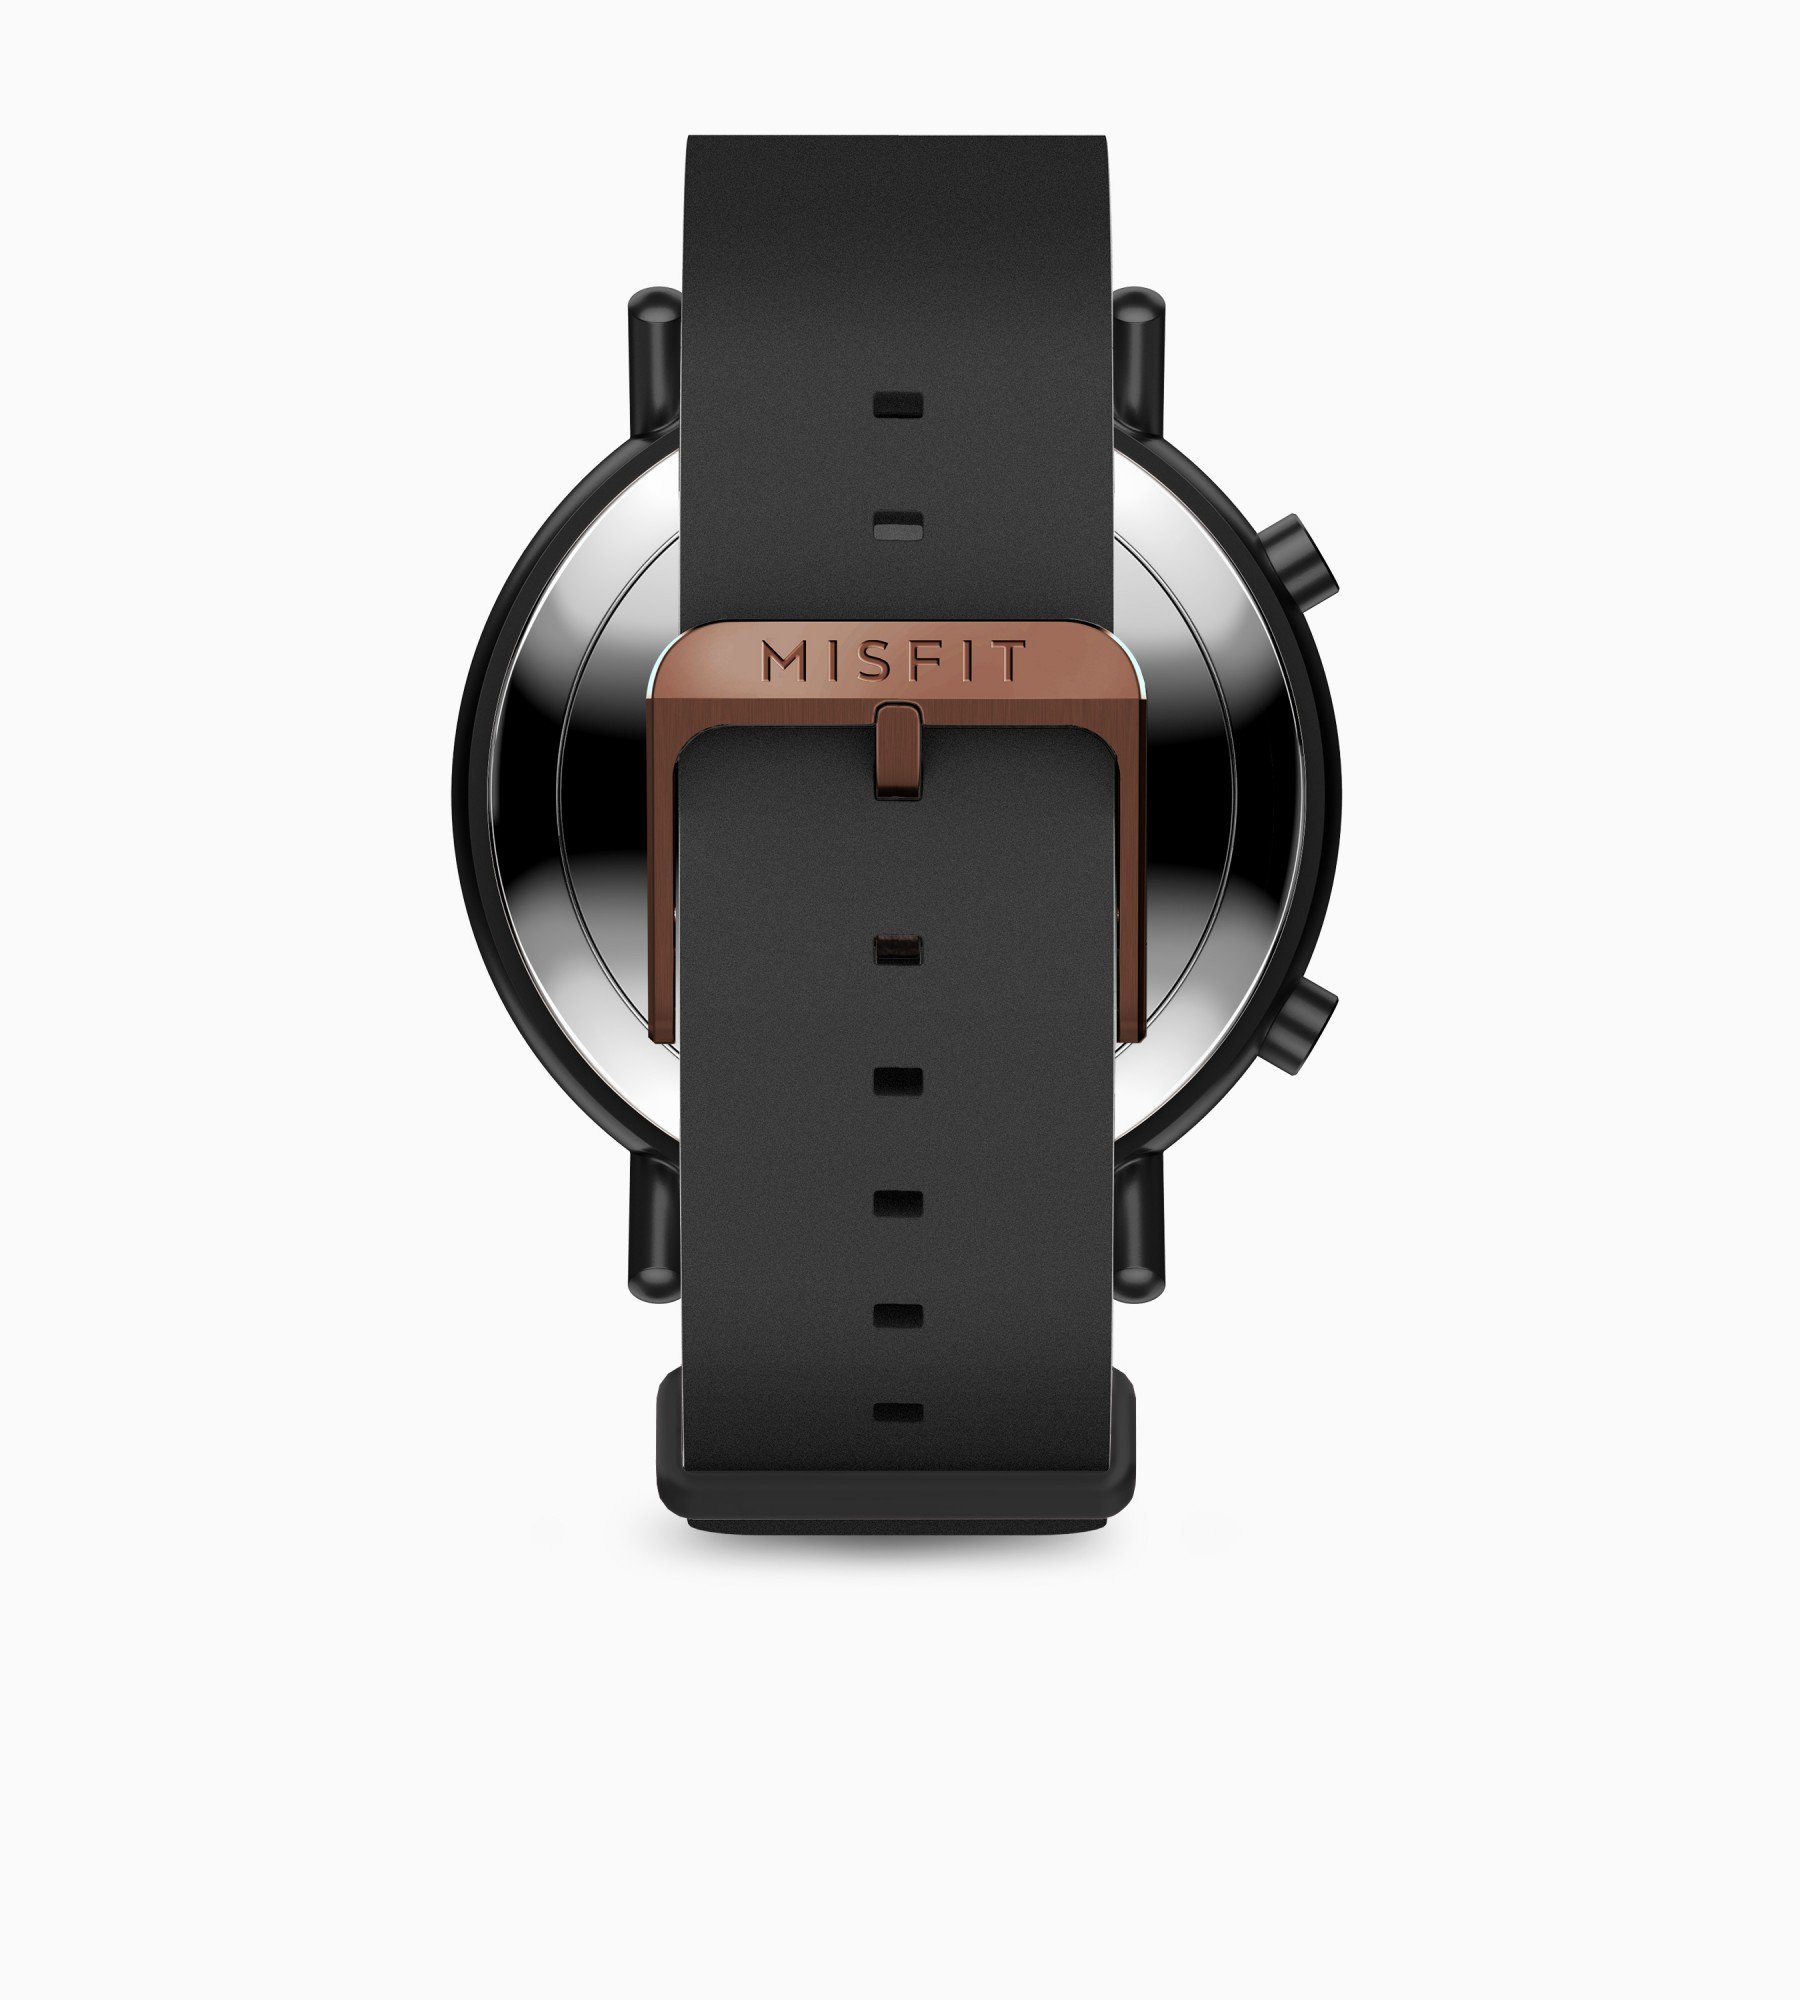 Misfit Command là
đồng hồ lai có thể theo dõi sức khỏe
và nhận thông báo, giá 149 USD